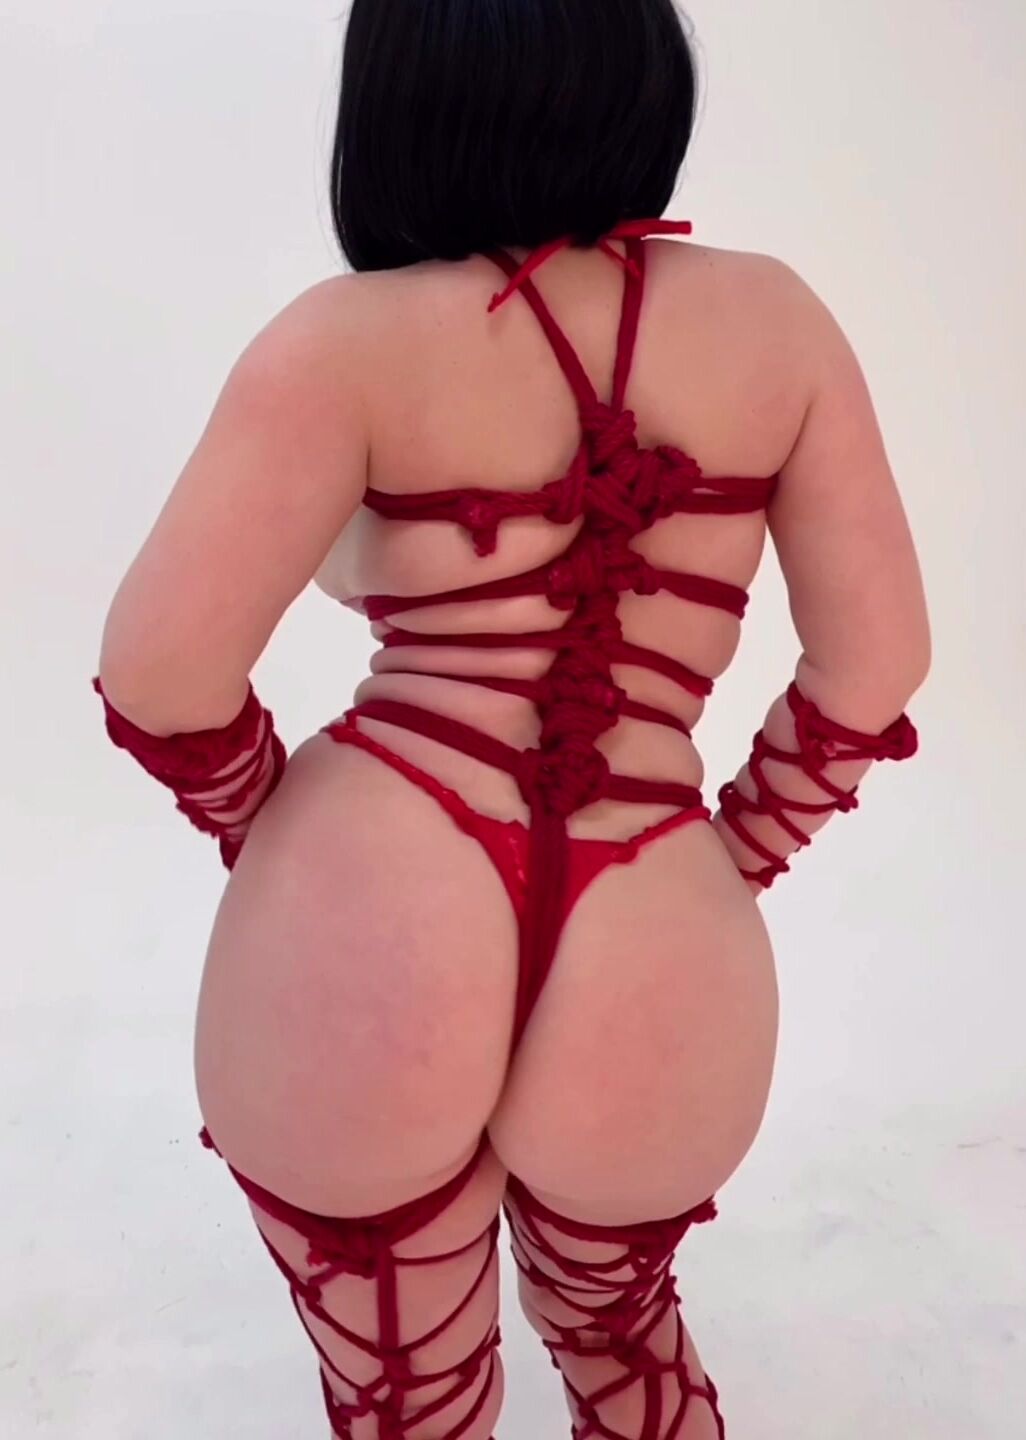 Juliette Michele (BishoujoMom) tied up BDSM OnlyFans